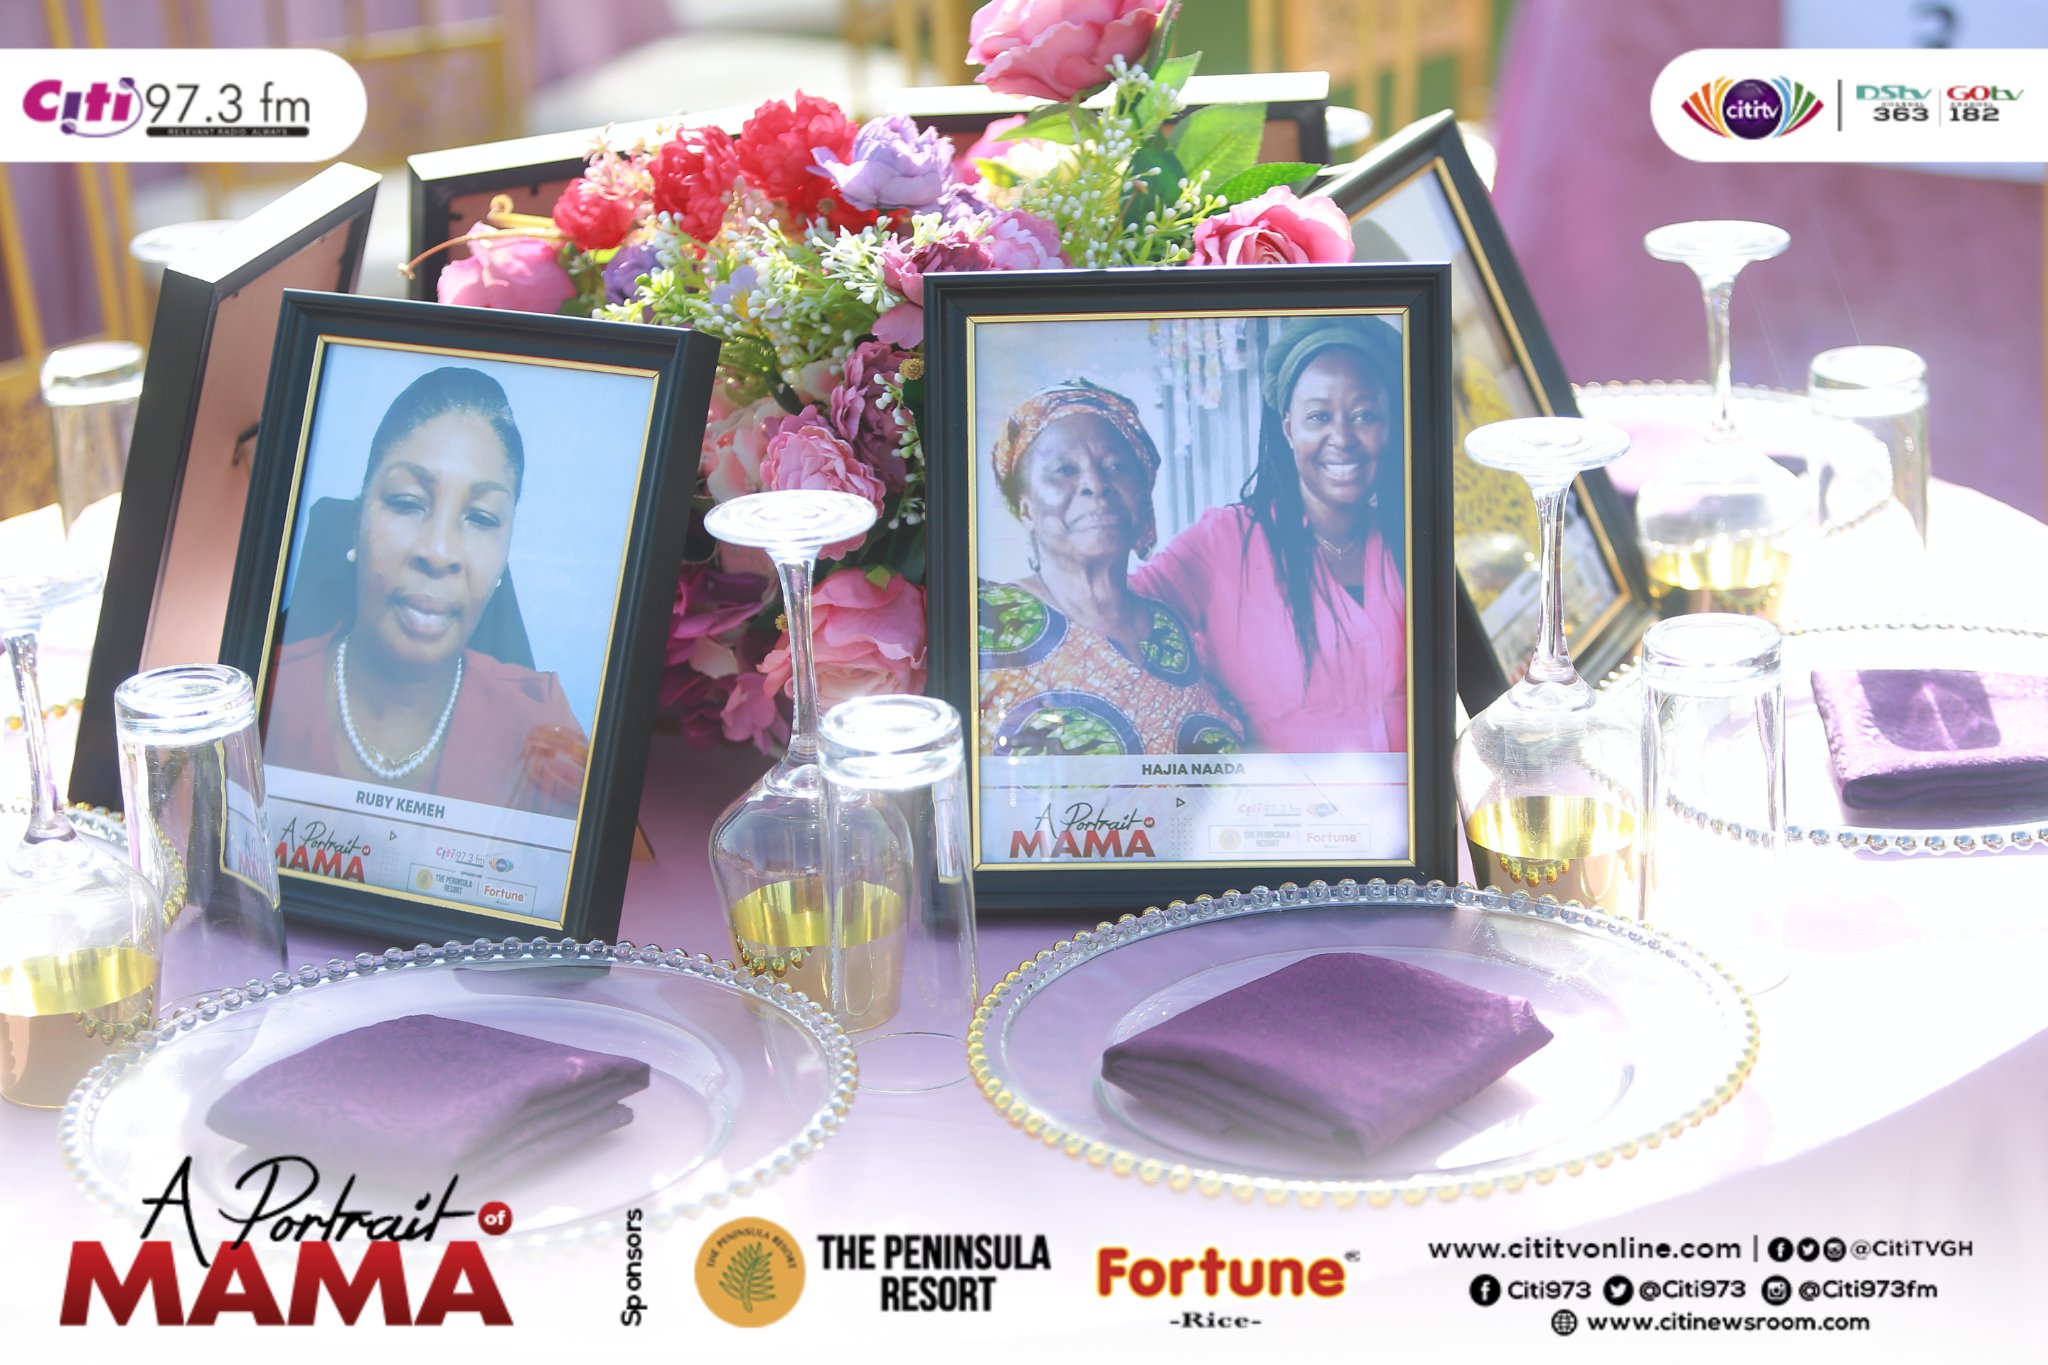 Citi TV/FM’s ‘A Portrait of Mama’ event underway